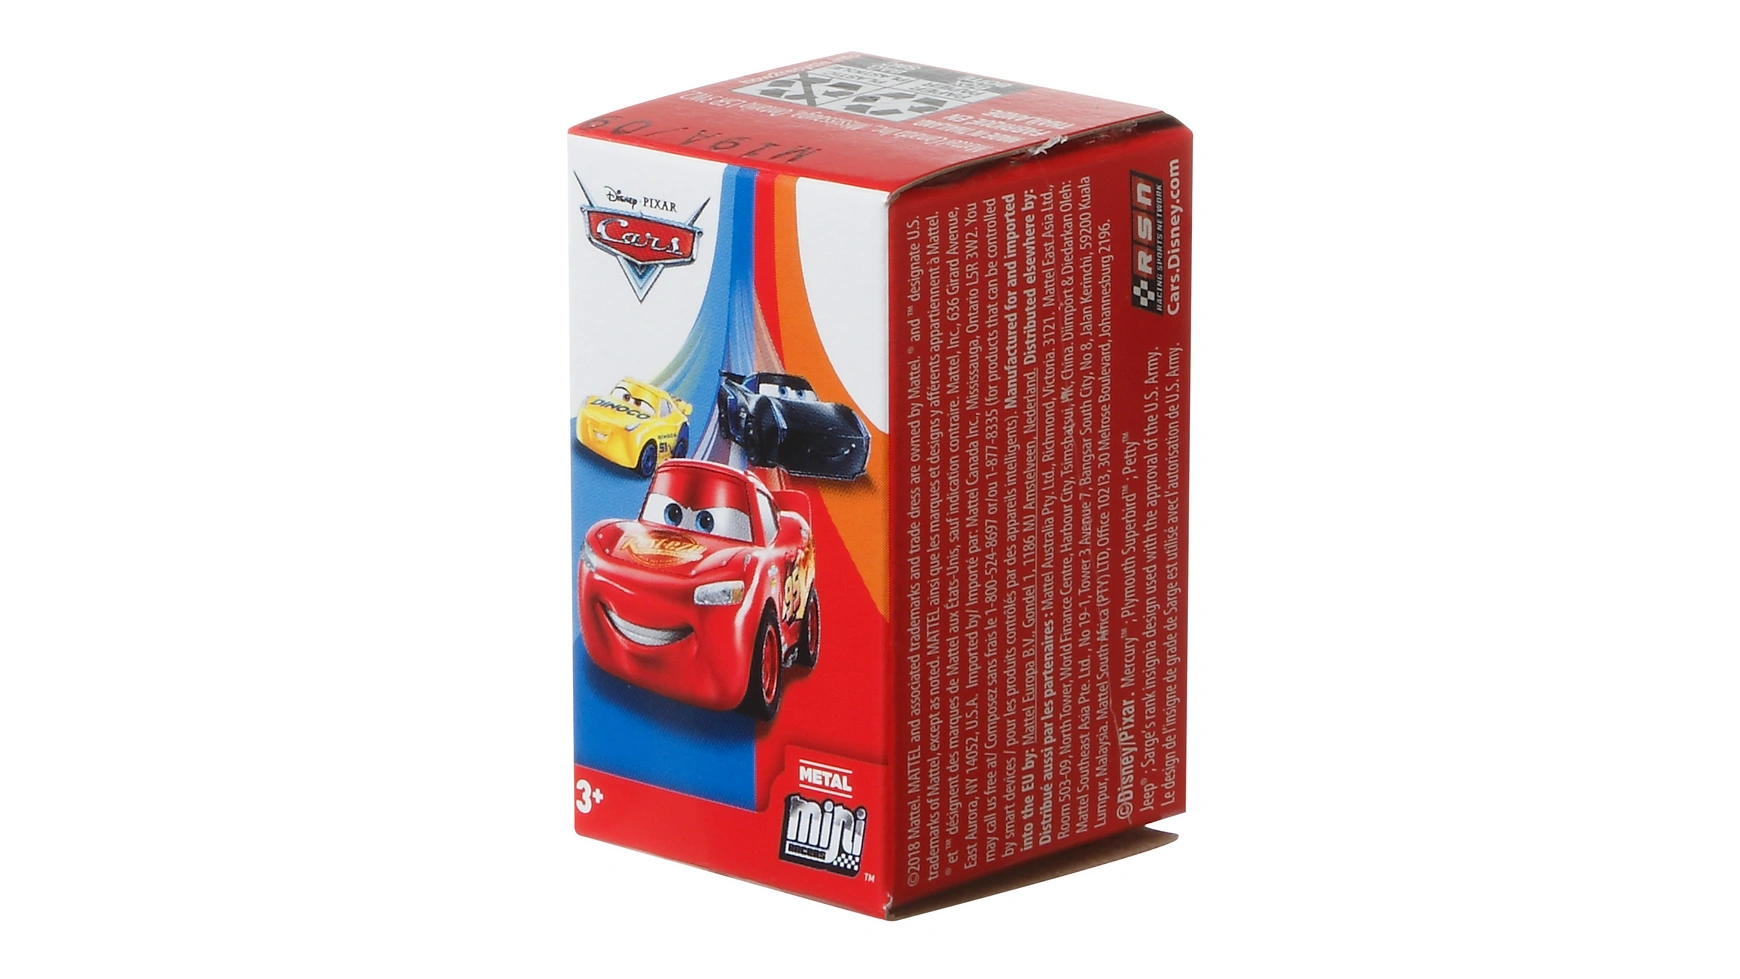 Ассортимент слепых наборов Disney Pixar Cars Mini Racers Mattel Disney Cars Fahrzeuge набор литых автомобилей с персонажами disney pixar cars 1 шт в ассортименте mattel disney cars fahrzeuge